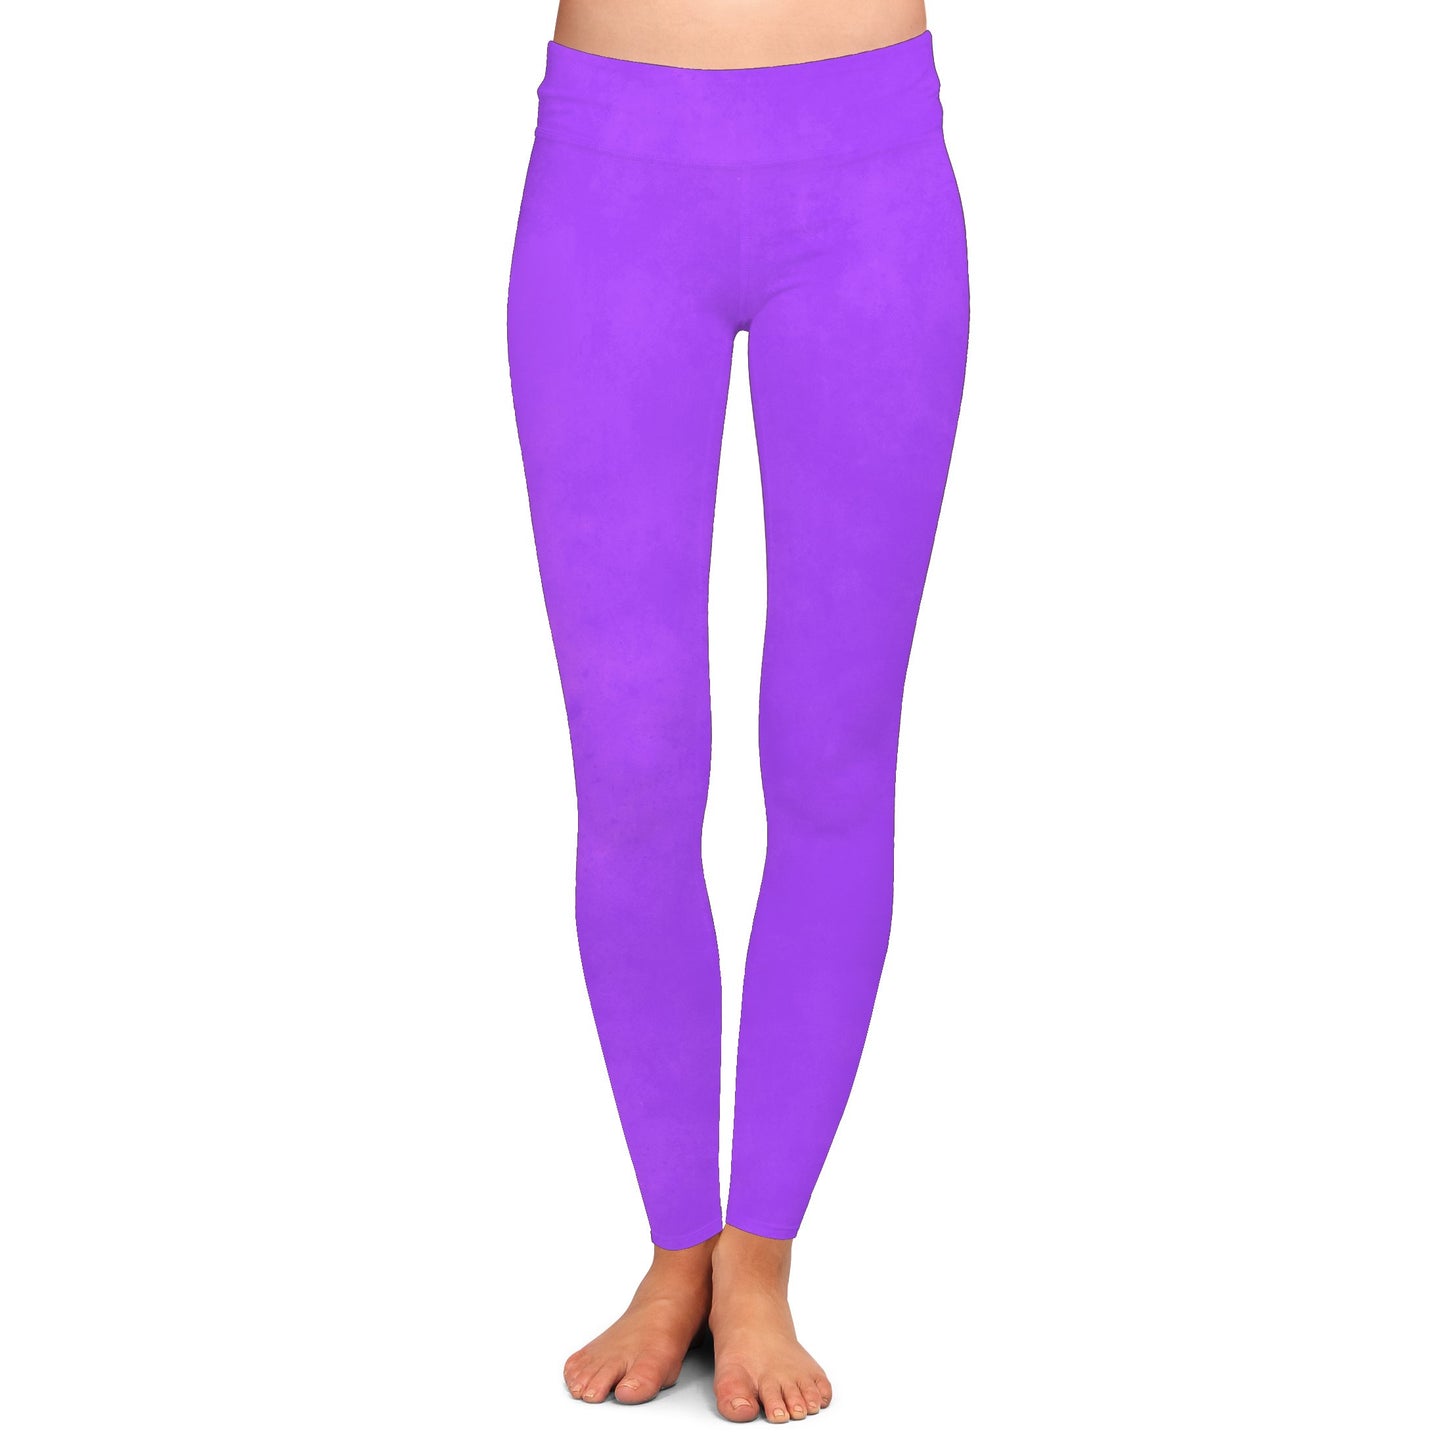 Lavender *Color Collection* - Leggings & Capris